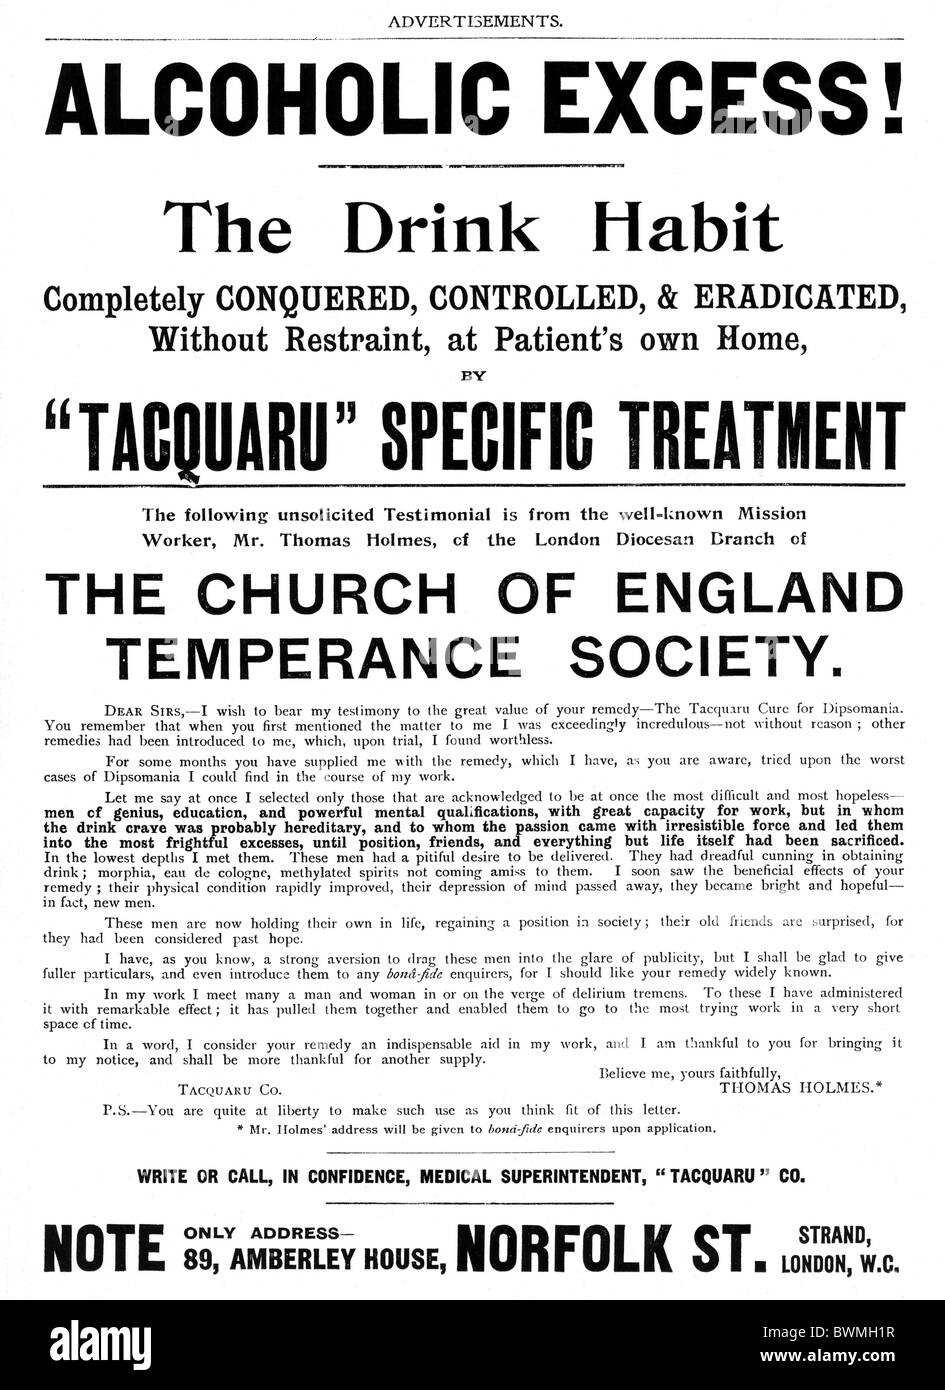 Tacquaru Behandlung, 1901-Anzeige nach einem Heilmittel für alkoholische überschüssige, die trinken Gewohnheit vollständig erobert gesteuert und Stockfoto